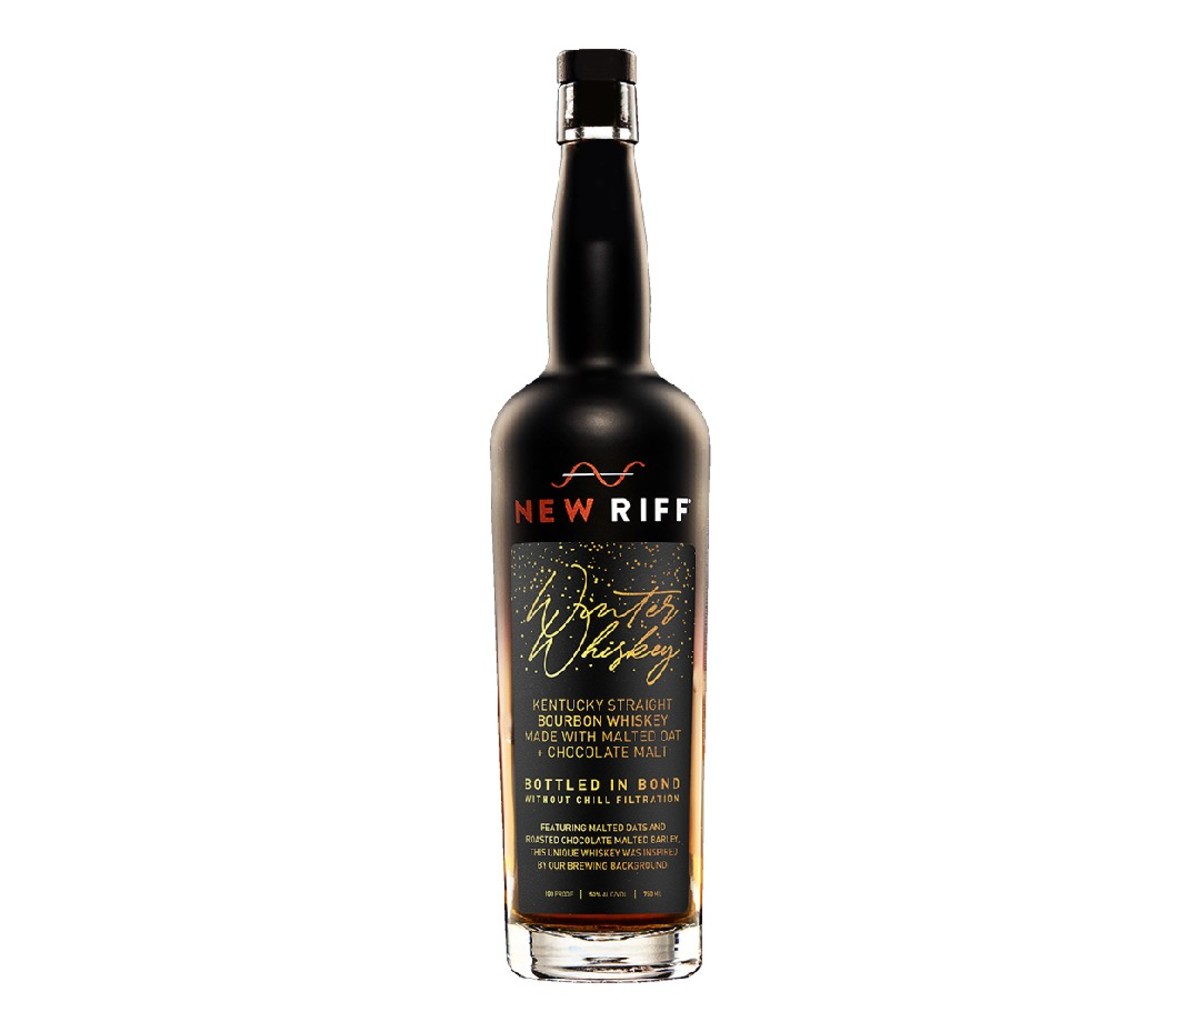 Bottle of New Riff Winter Whiskey